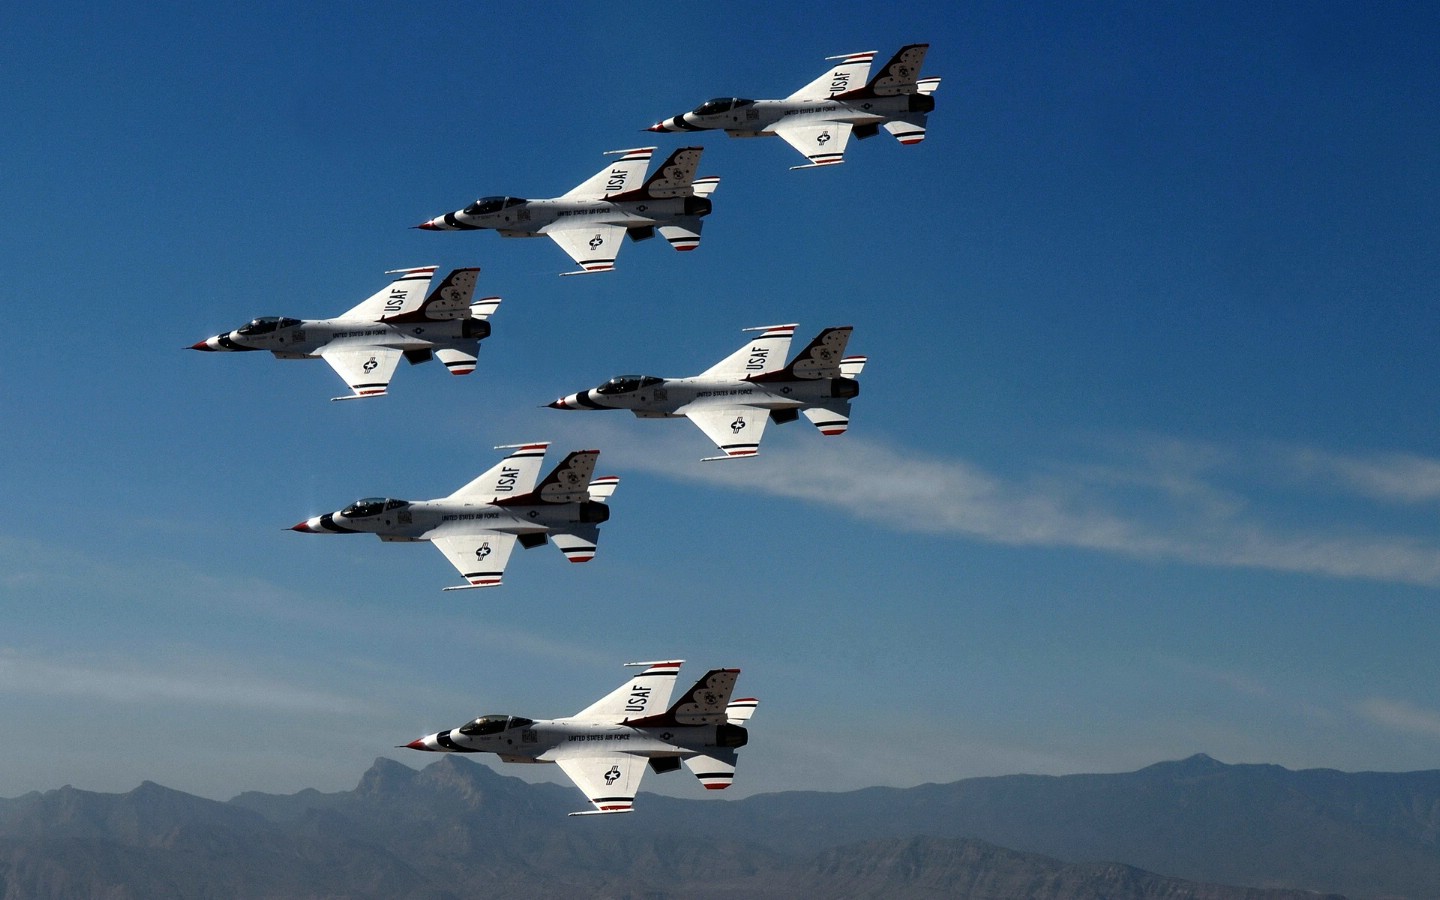 壁纸1440x900美国空军USAF的雷鸟 USAF Thunderbirds 壁纸46壁纸 美国空军USAF的雷壁纸 美国空军USAF的雷图片 美国空军USAF的雷素材 军事壁纸 军事图库 军事图片素材桌面壁纸